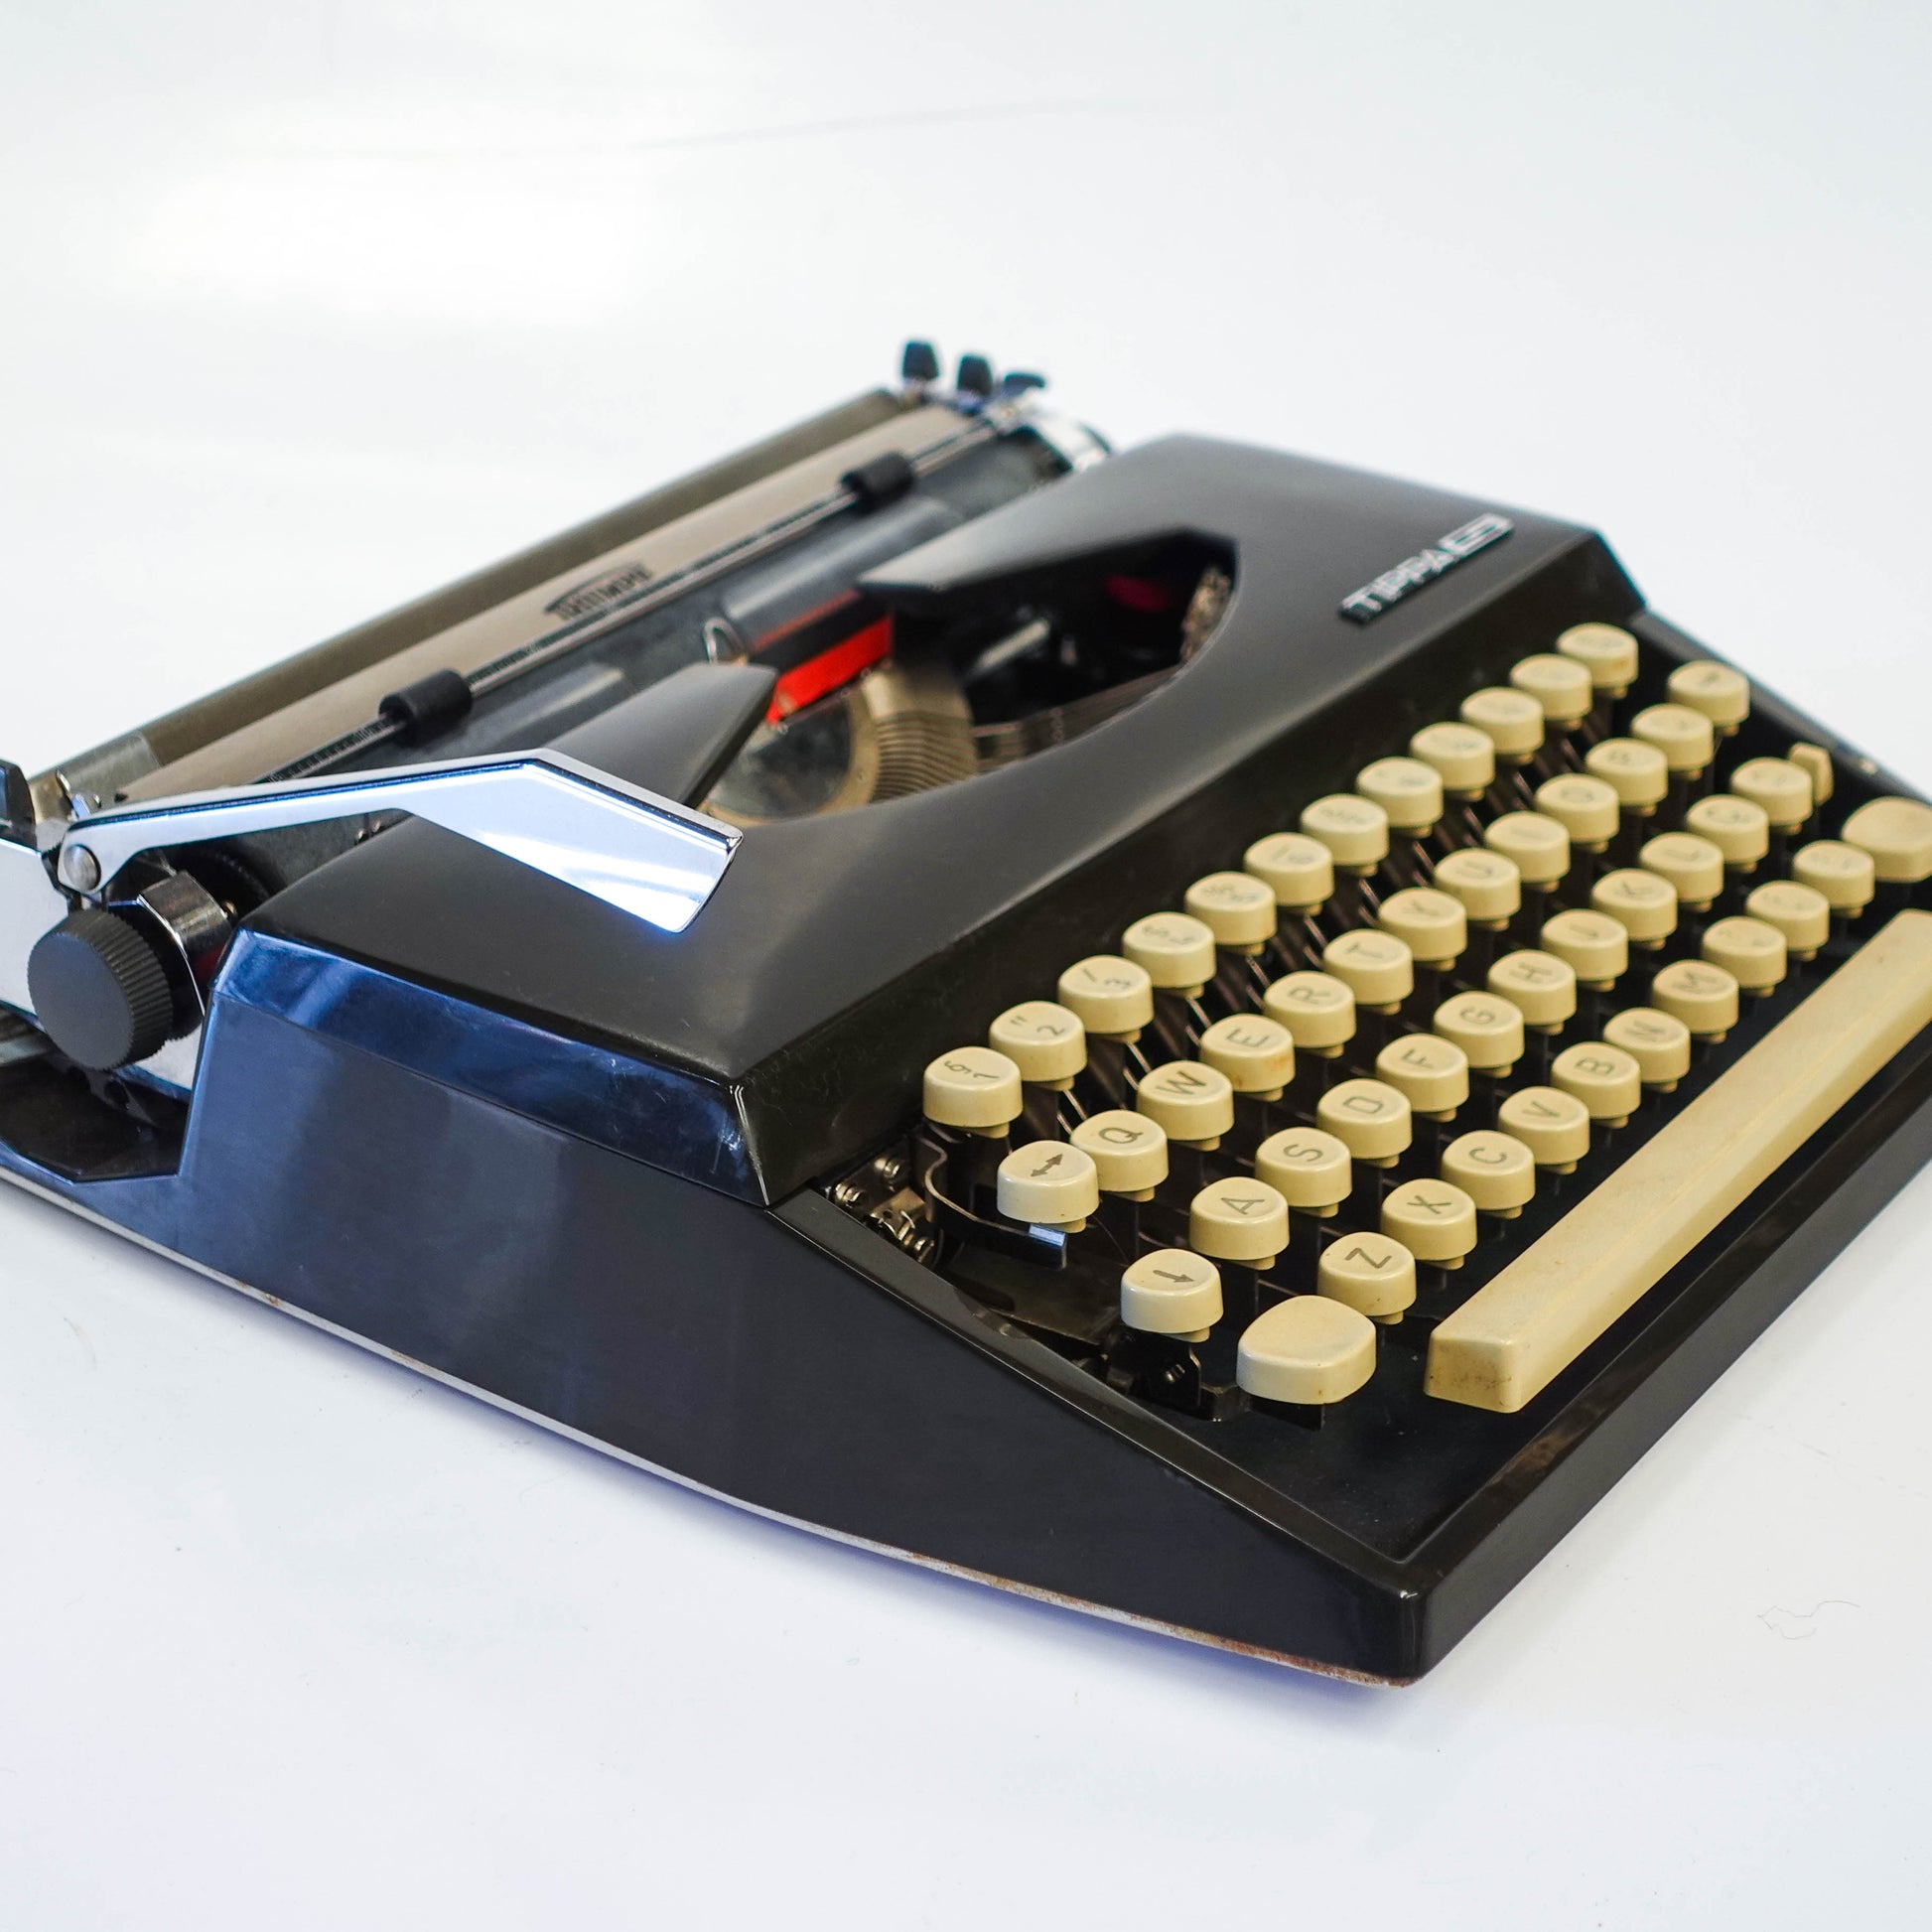 Máquina de Escrever Triumph Tippa S dos anos 1960